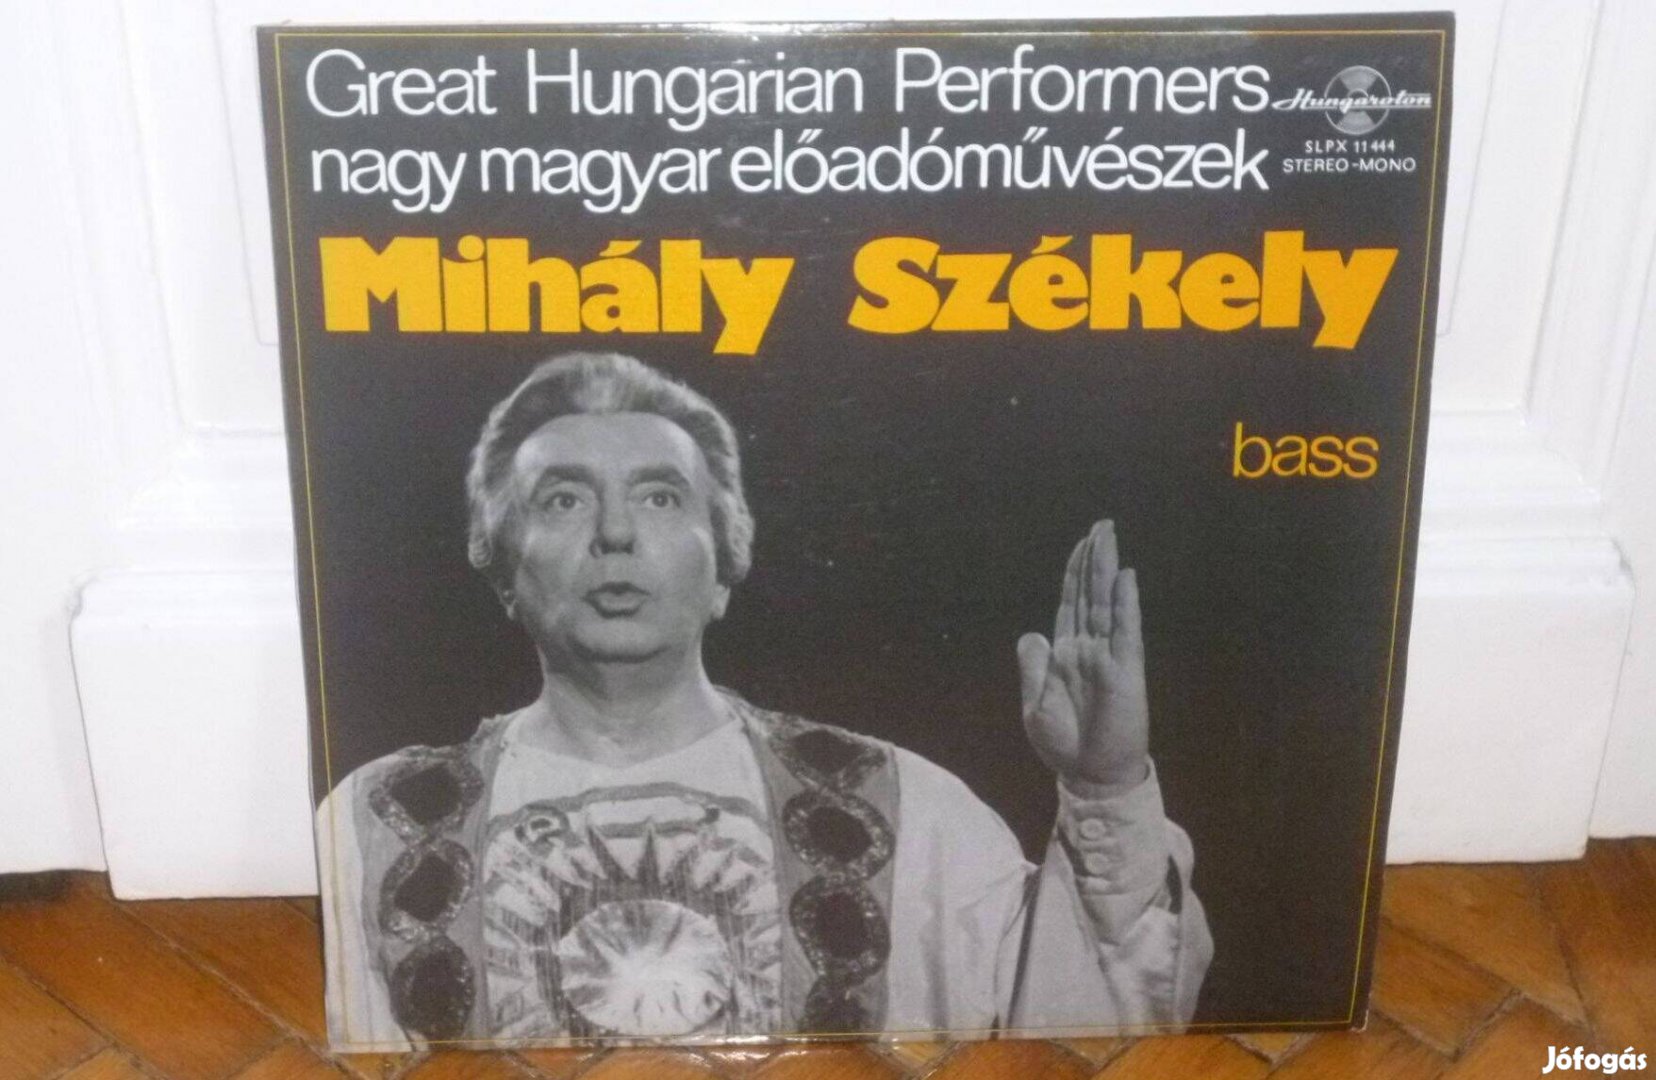 Mihály Székely - Mihály Székely Bass LP